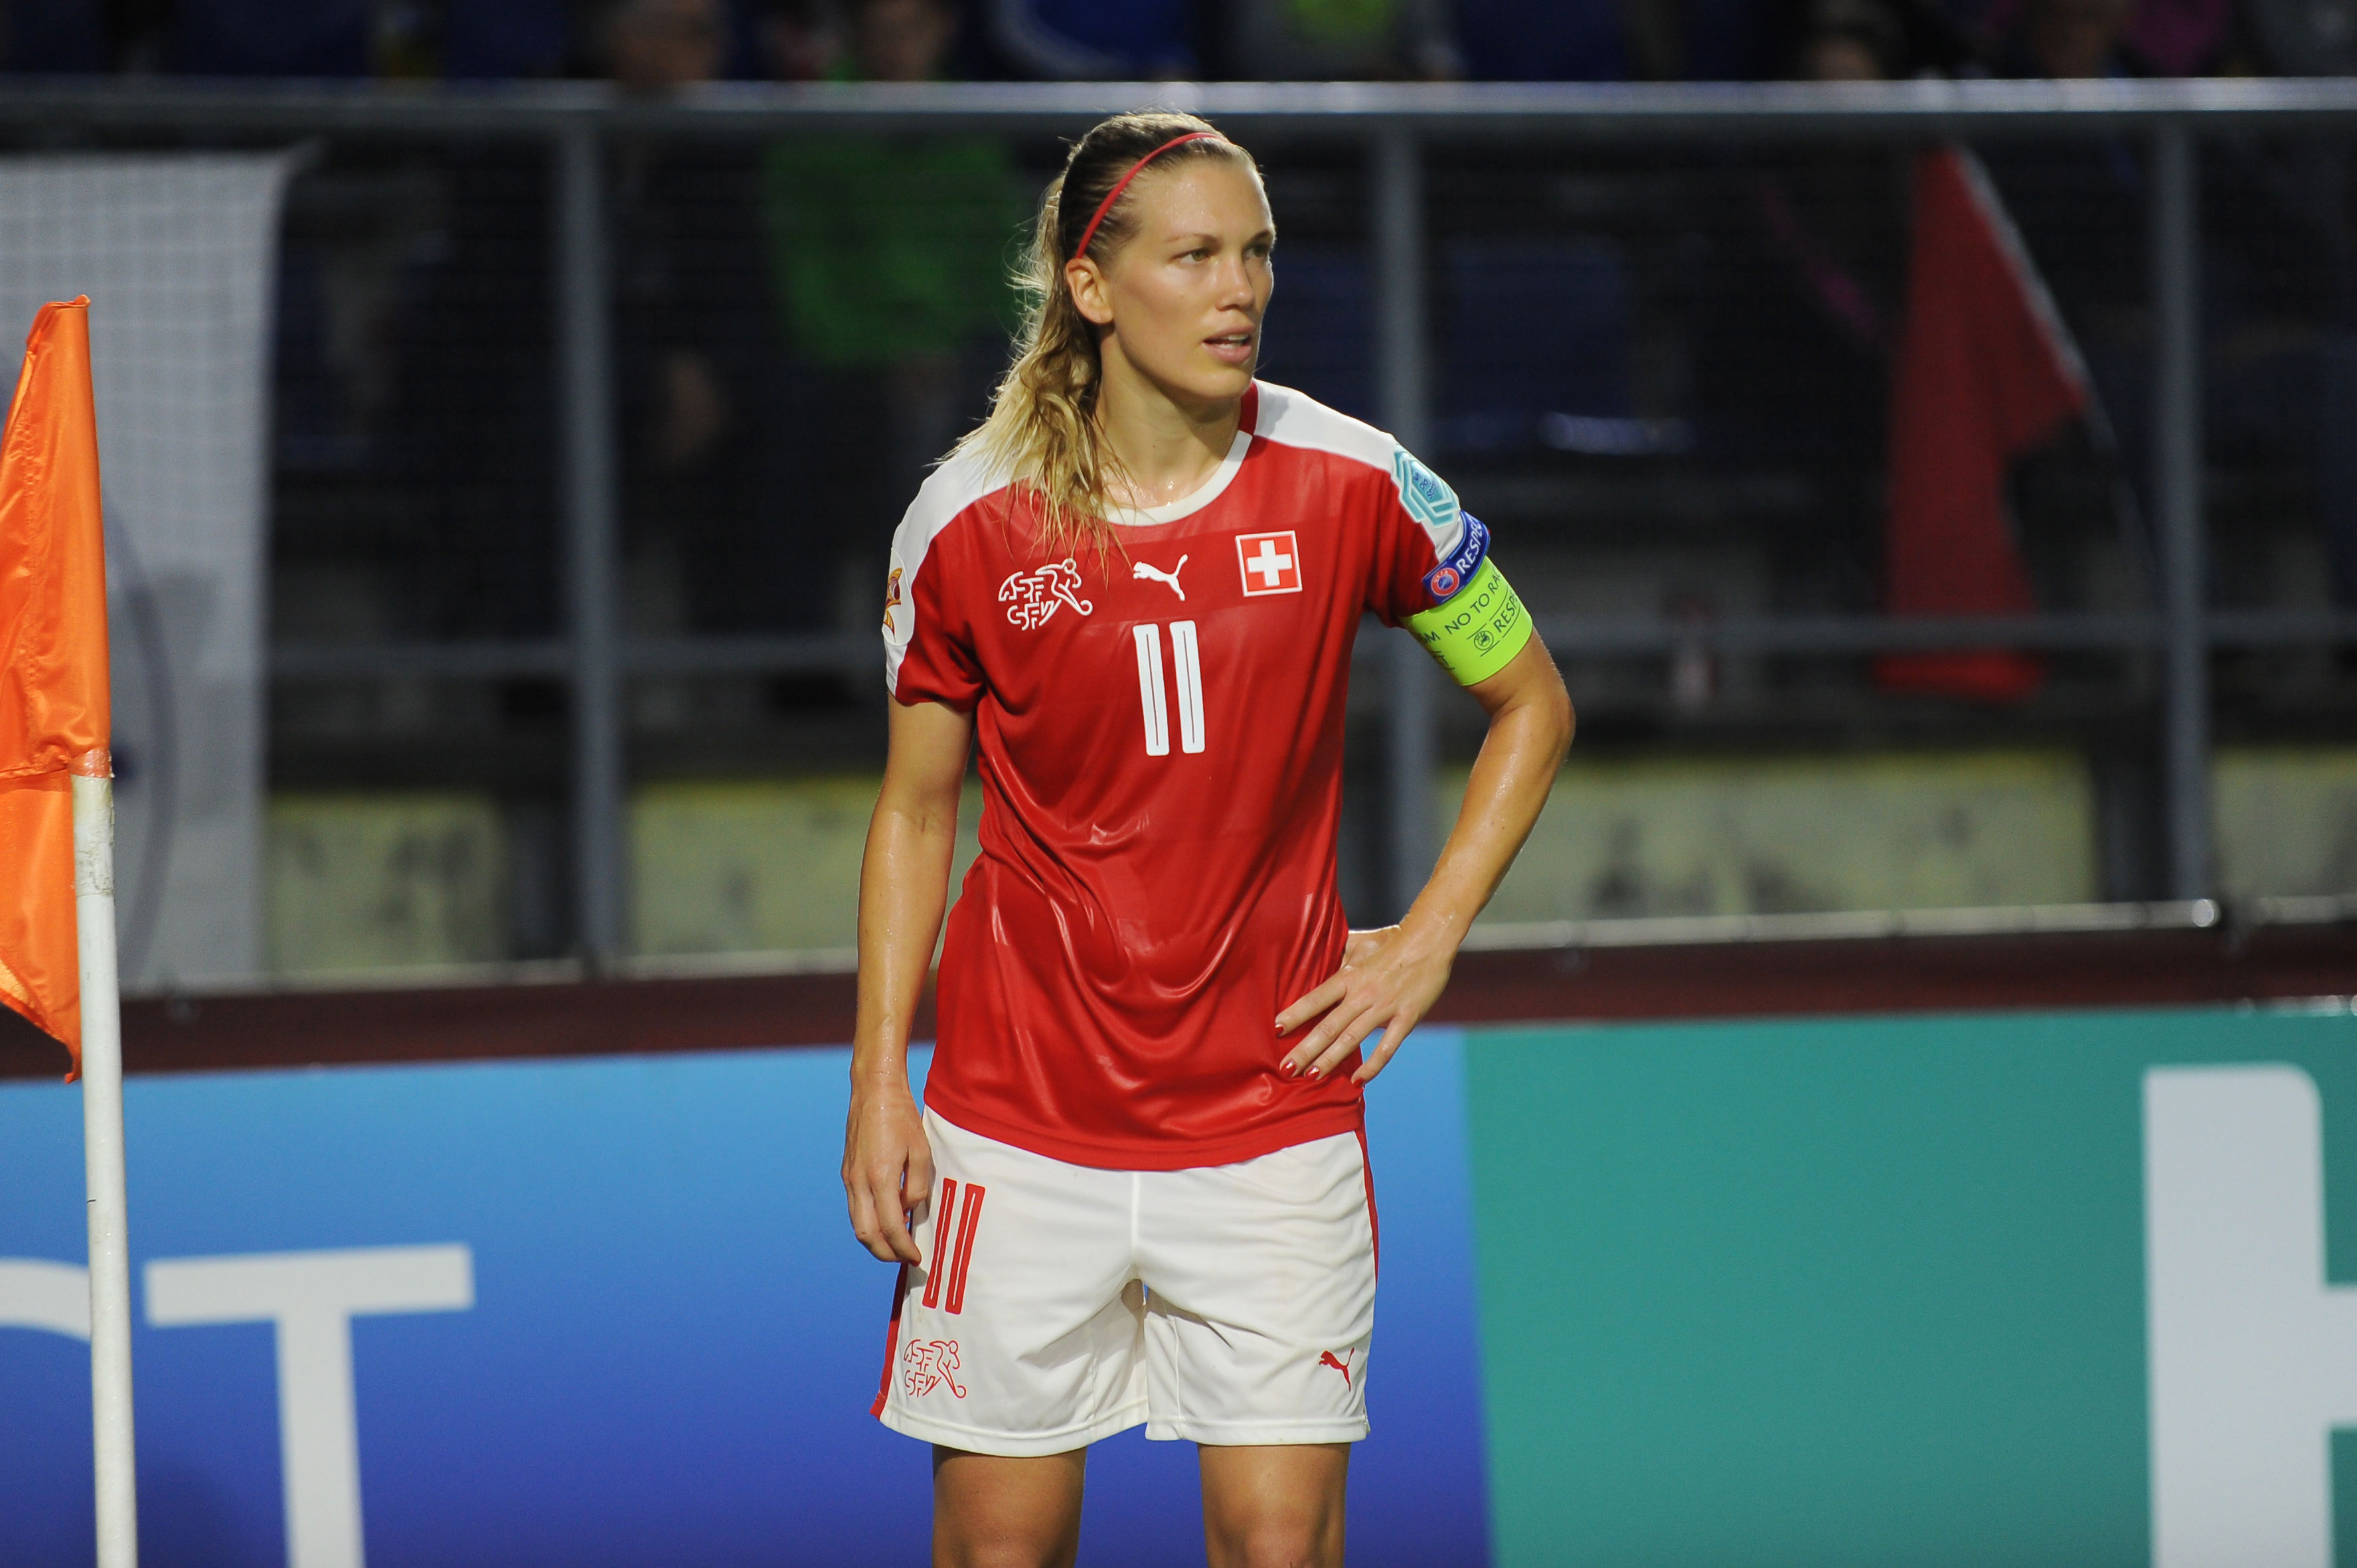 Fussballerin Lara Dickenmann auf dem Fussballplatz schaut nach rechts, Kapitänsbinde am linken Arm.